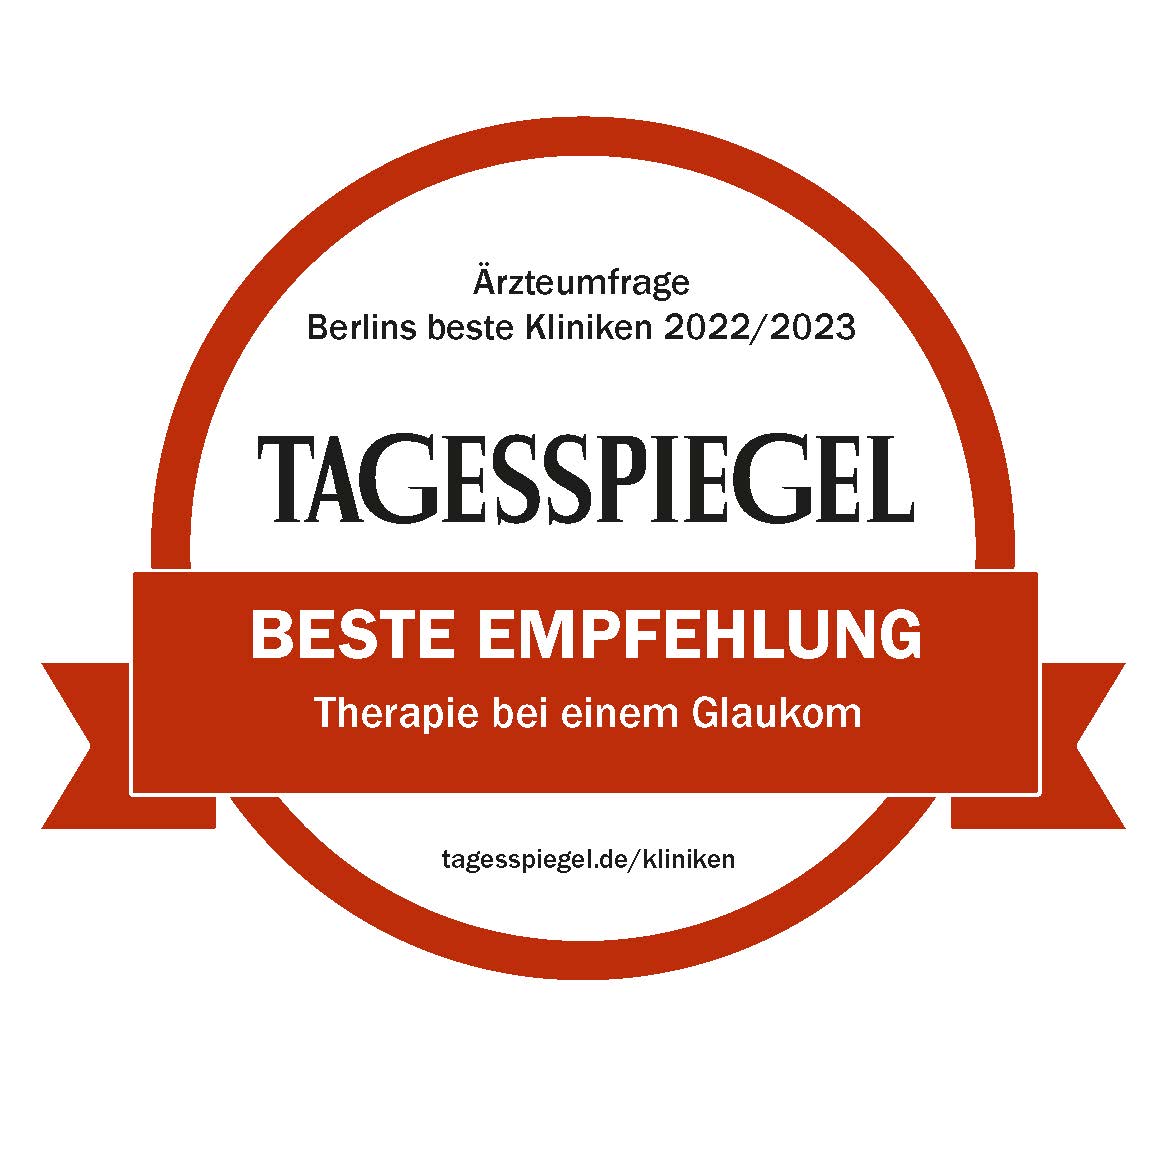 Tagesspiegel: Berlins beste Kliniken: Therapie bei einem Glaukom